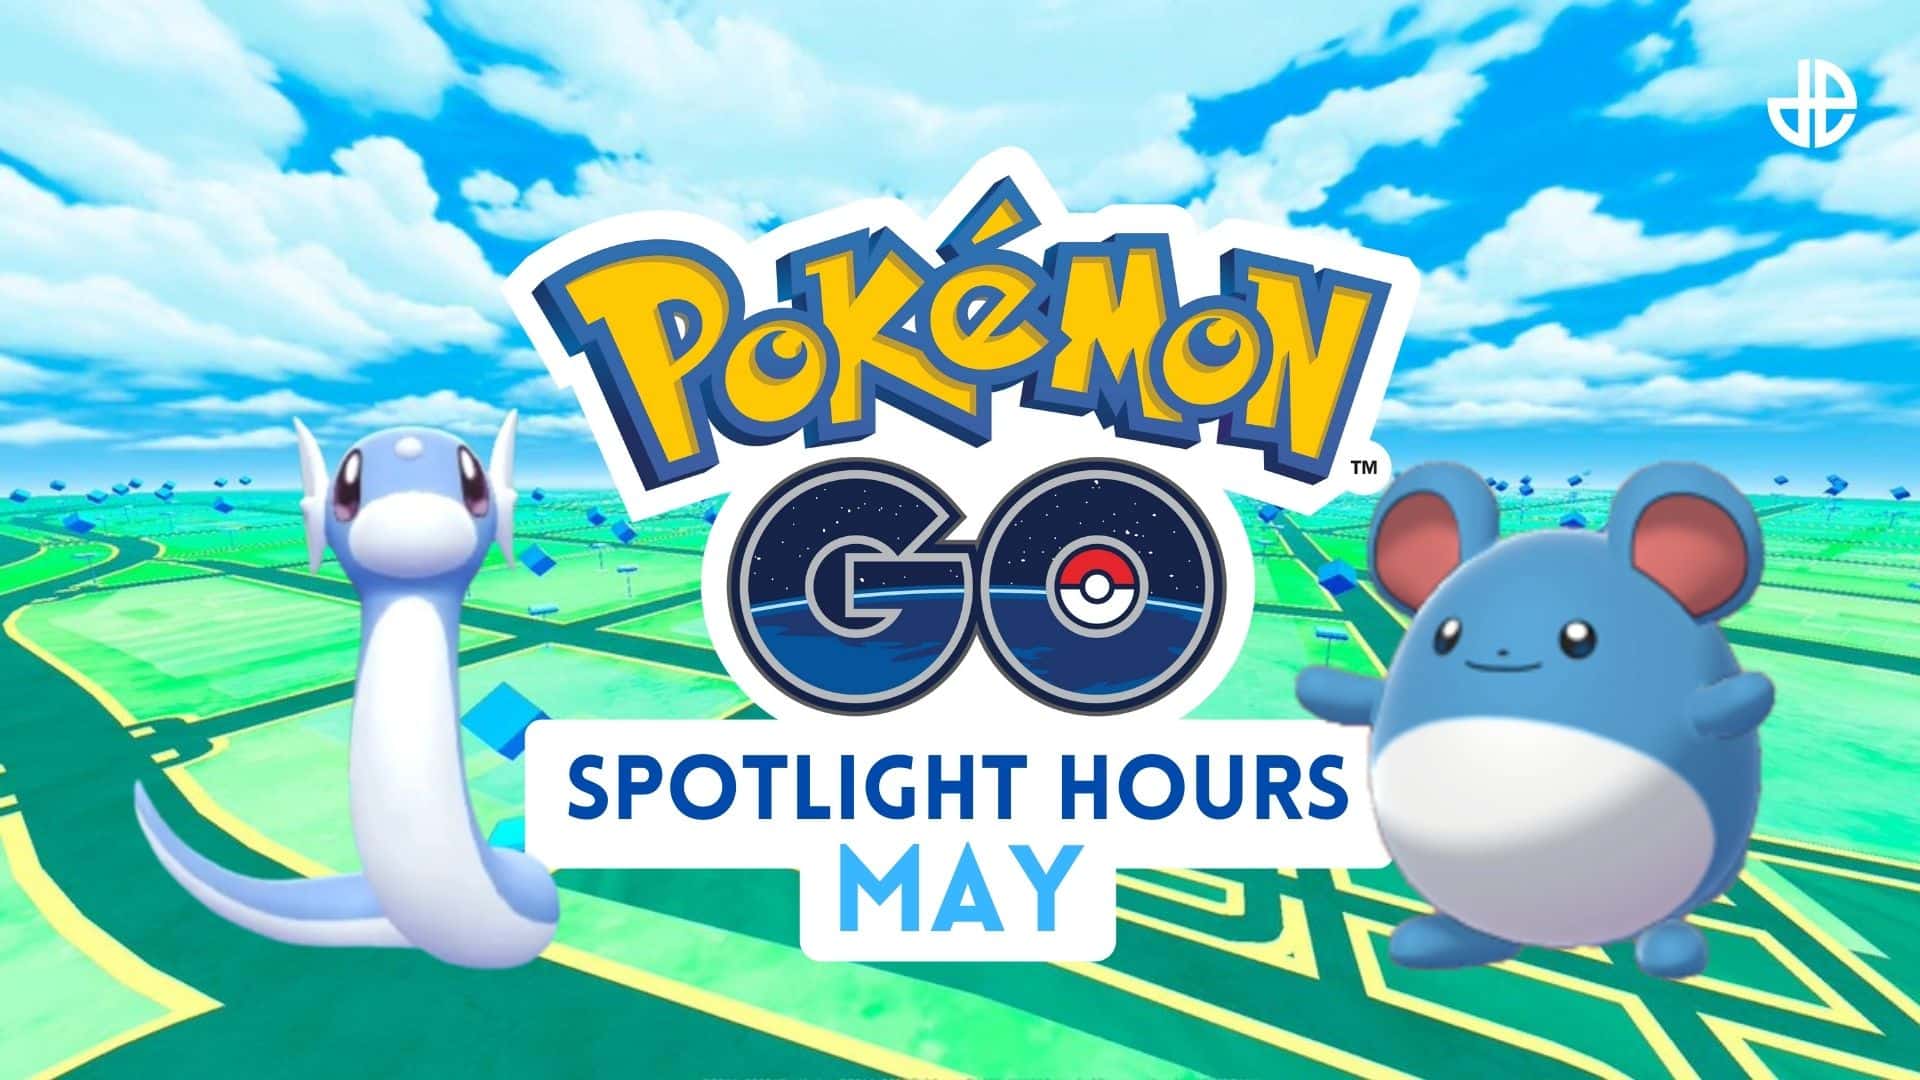 Next up, Marill! Pokemon Go Spotlight Hours for May 2021 Dexerto